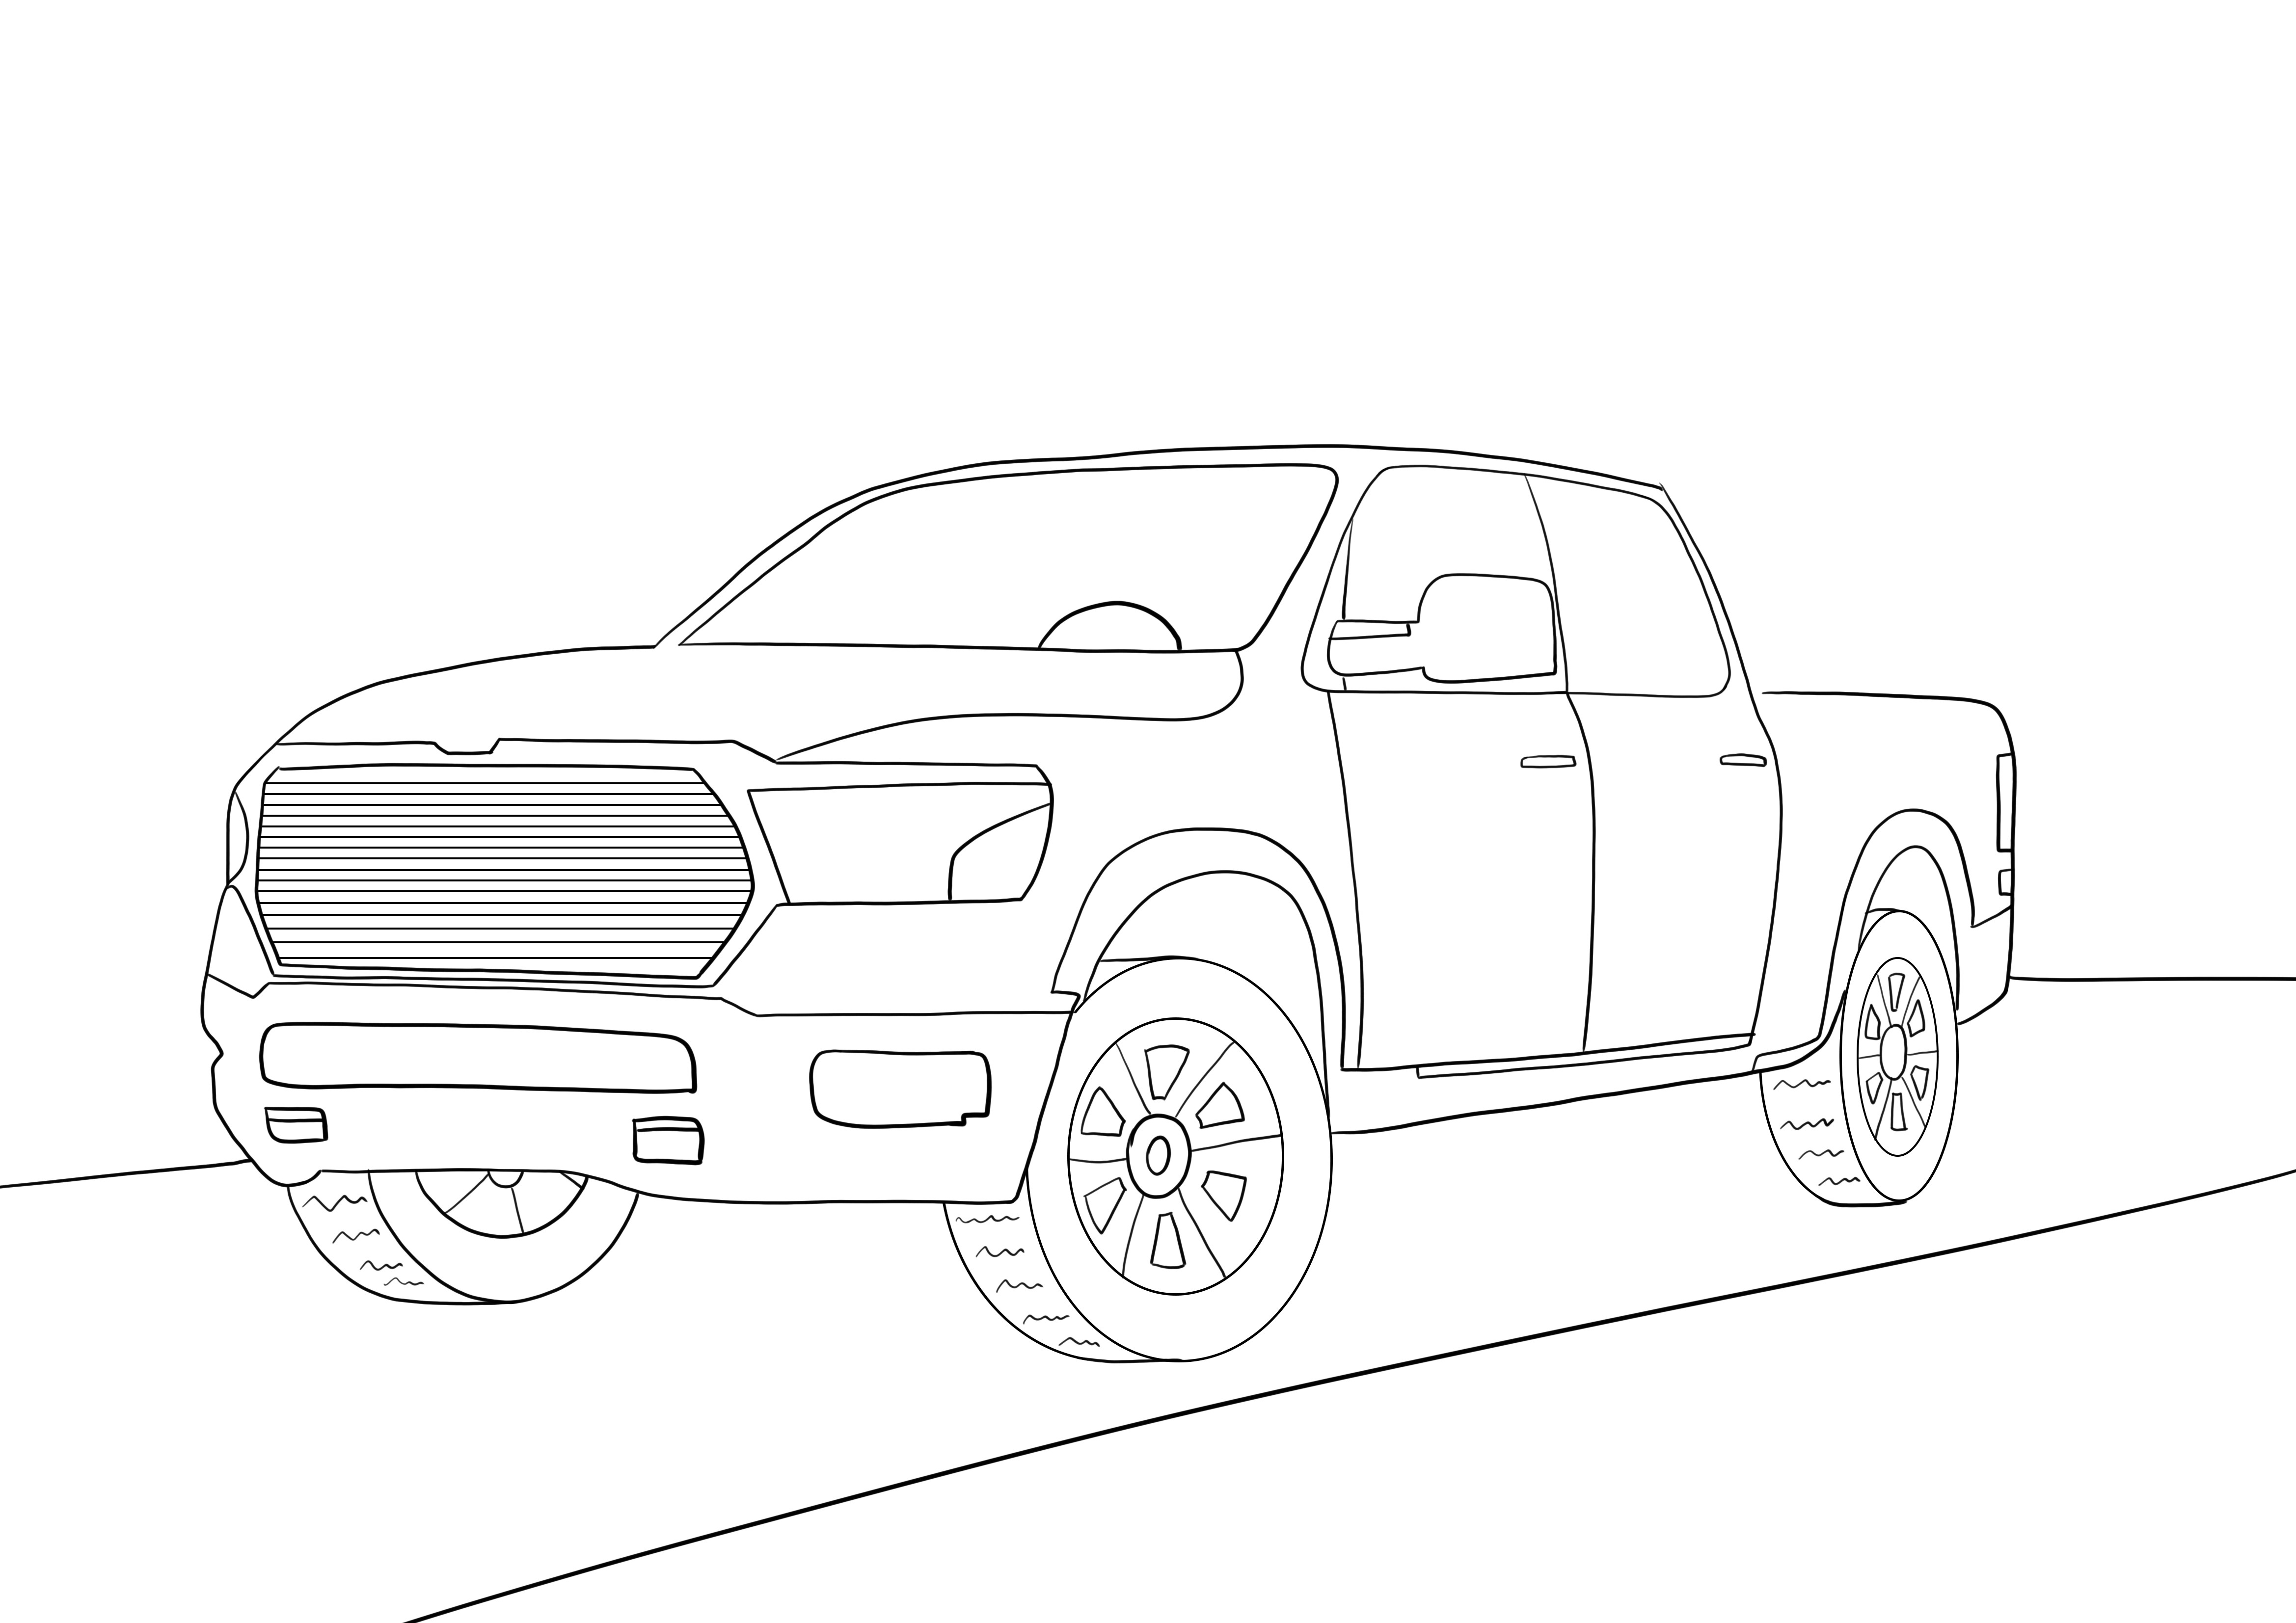 Carro Dodge Ram para download gratuito e imagem para colorir